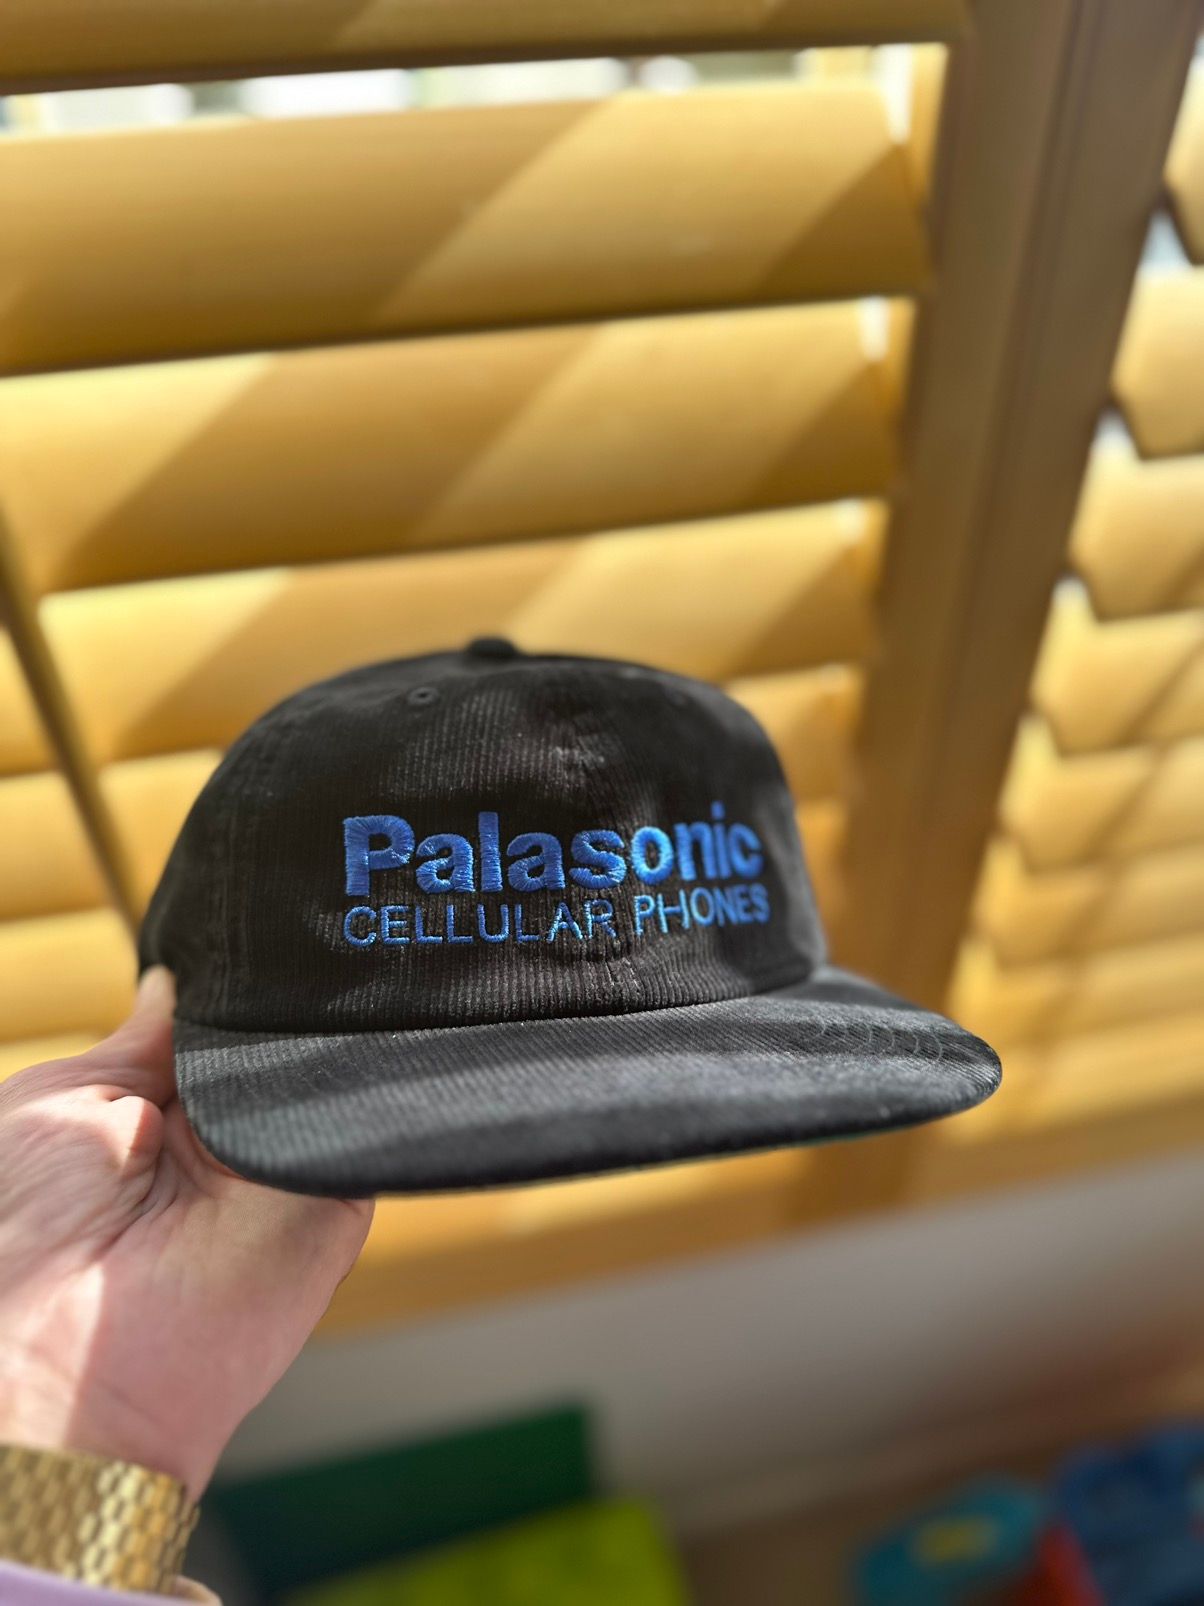 Palace Palasonic Cord PAL Hat Stone